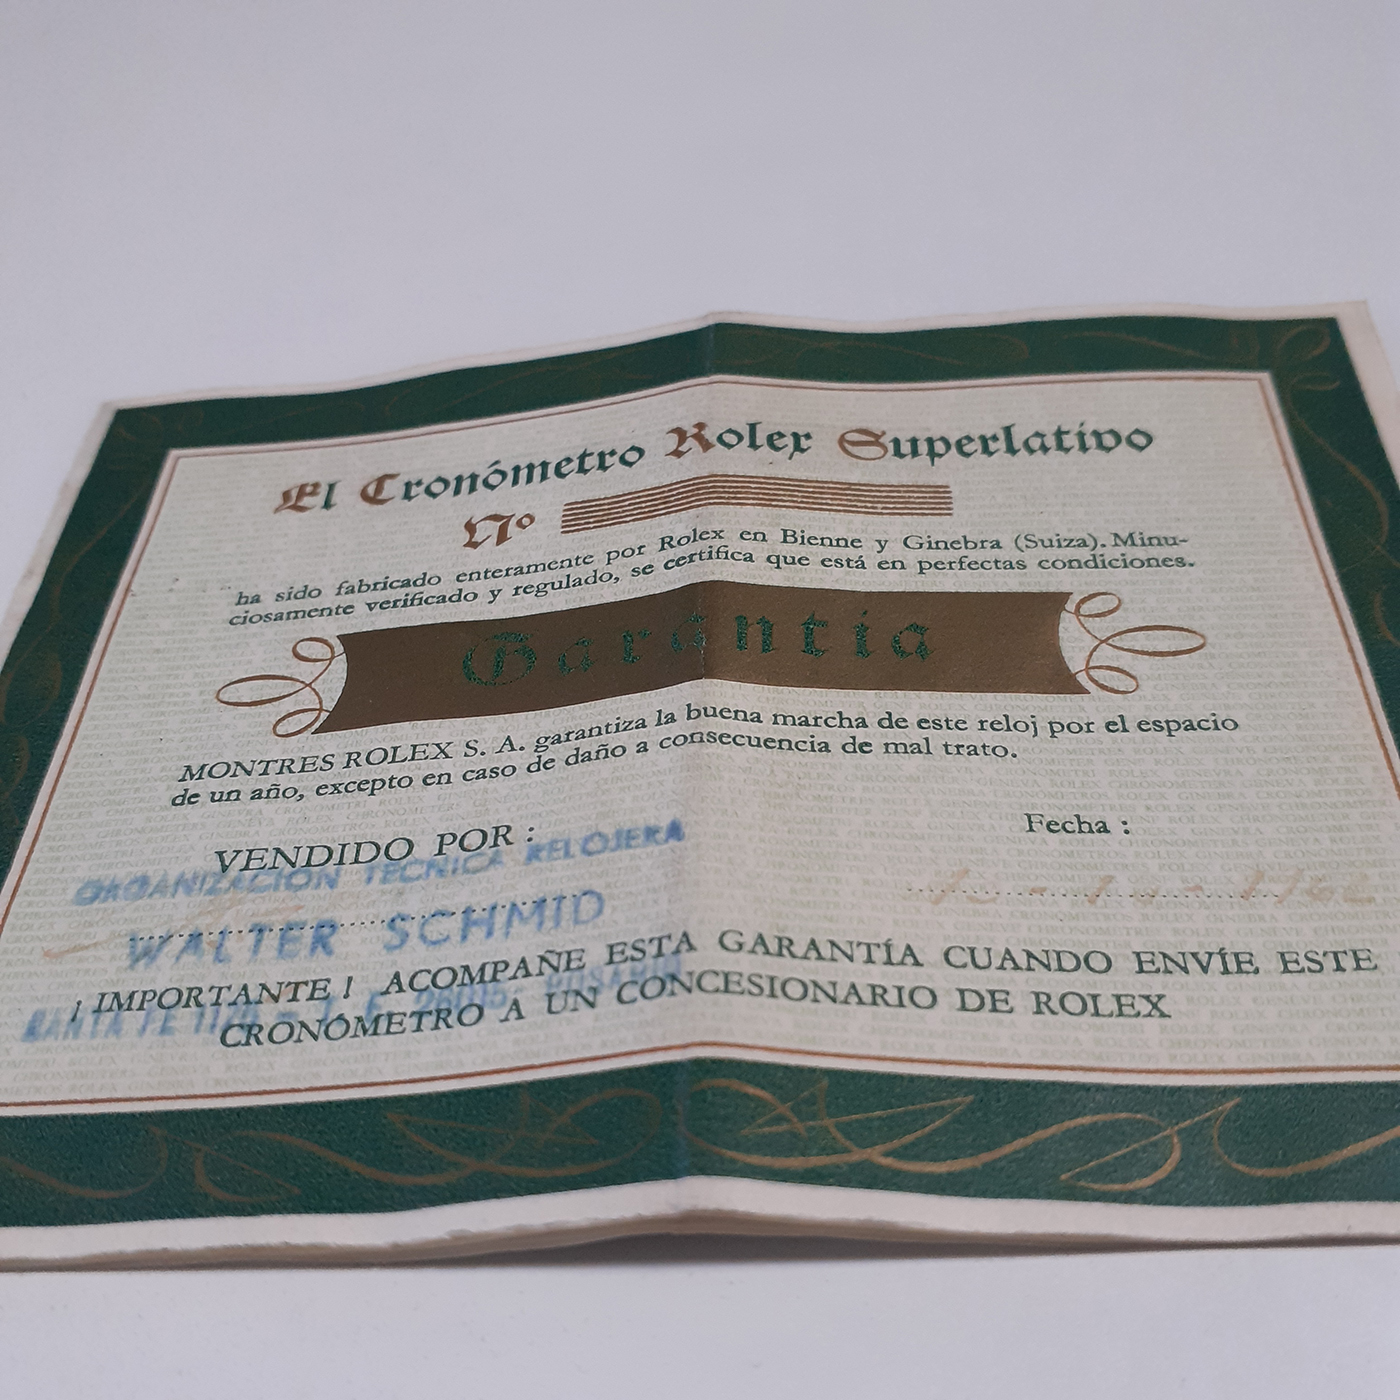 Rolex guarantee CIRCA 1959 ,NO NAME NO NUMBER , VINTAGE EL CRONOMETRO ROLEX SUPERLATIVO Certificado Chronometer & Guarantee Super Rare Spanish